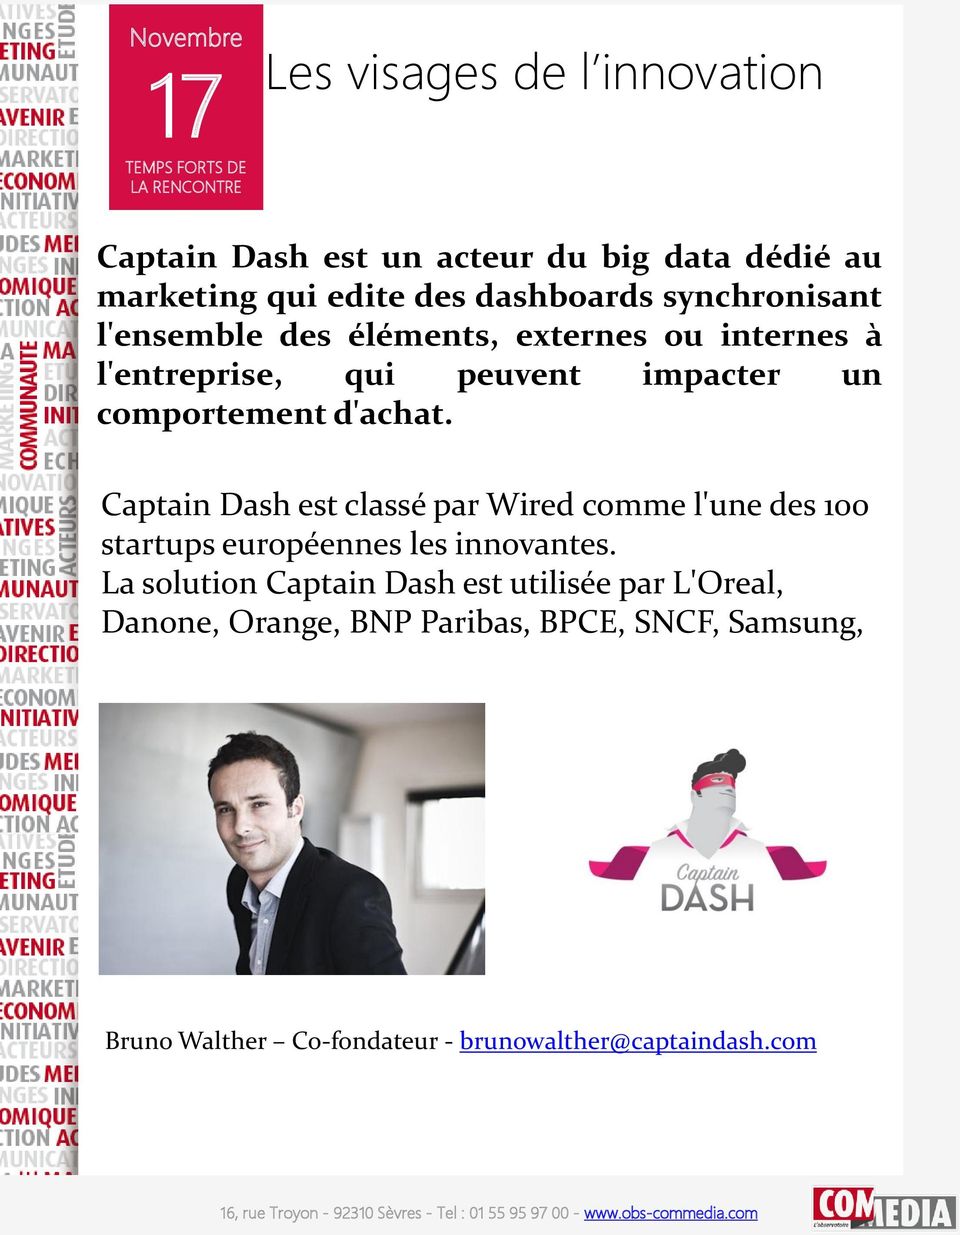 Captain Dash est classé par Wired comme l'une des 100 startups européennes les innovantes.